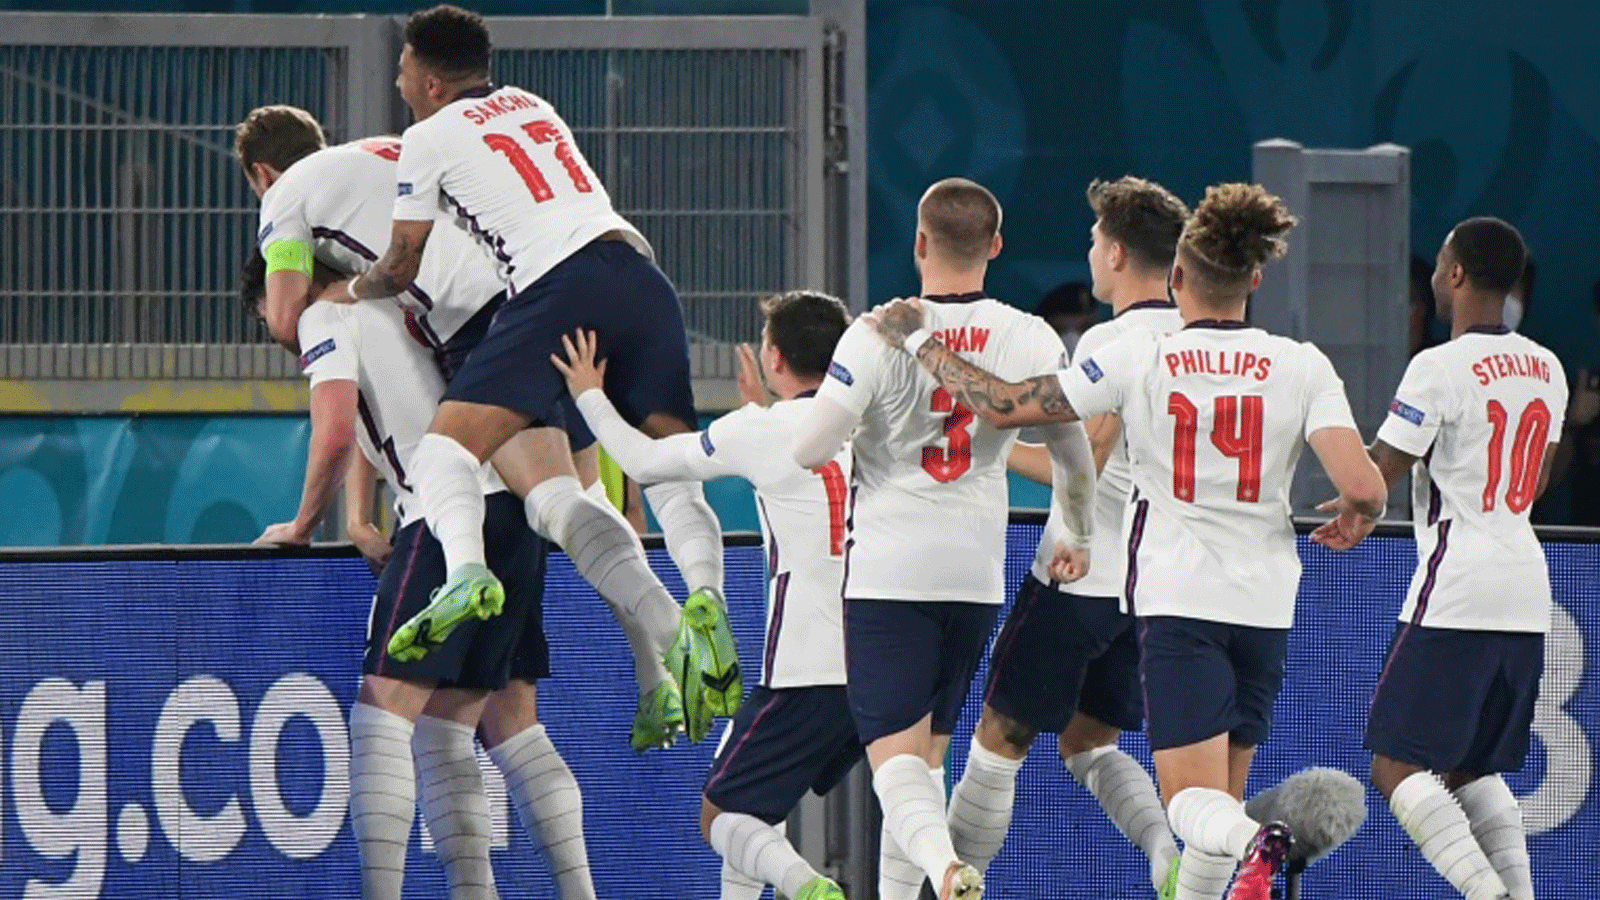  لاعبو إنكلترا يحتفلون بالهدف الثاني في مرمى أوكرانيا خلال مباراتهما في ثمن نهائي كأس أوروبا، روما في 3 تموز/يوليو 2021